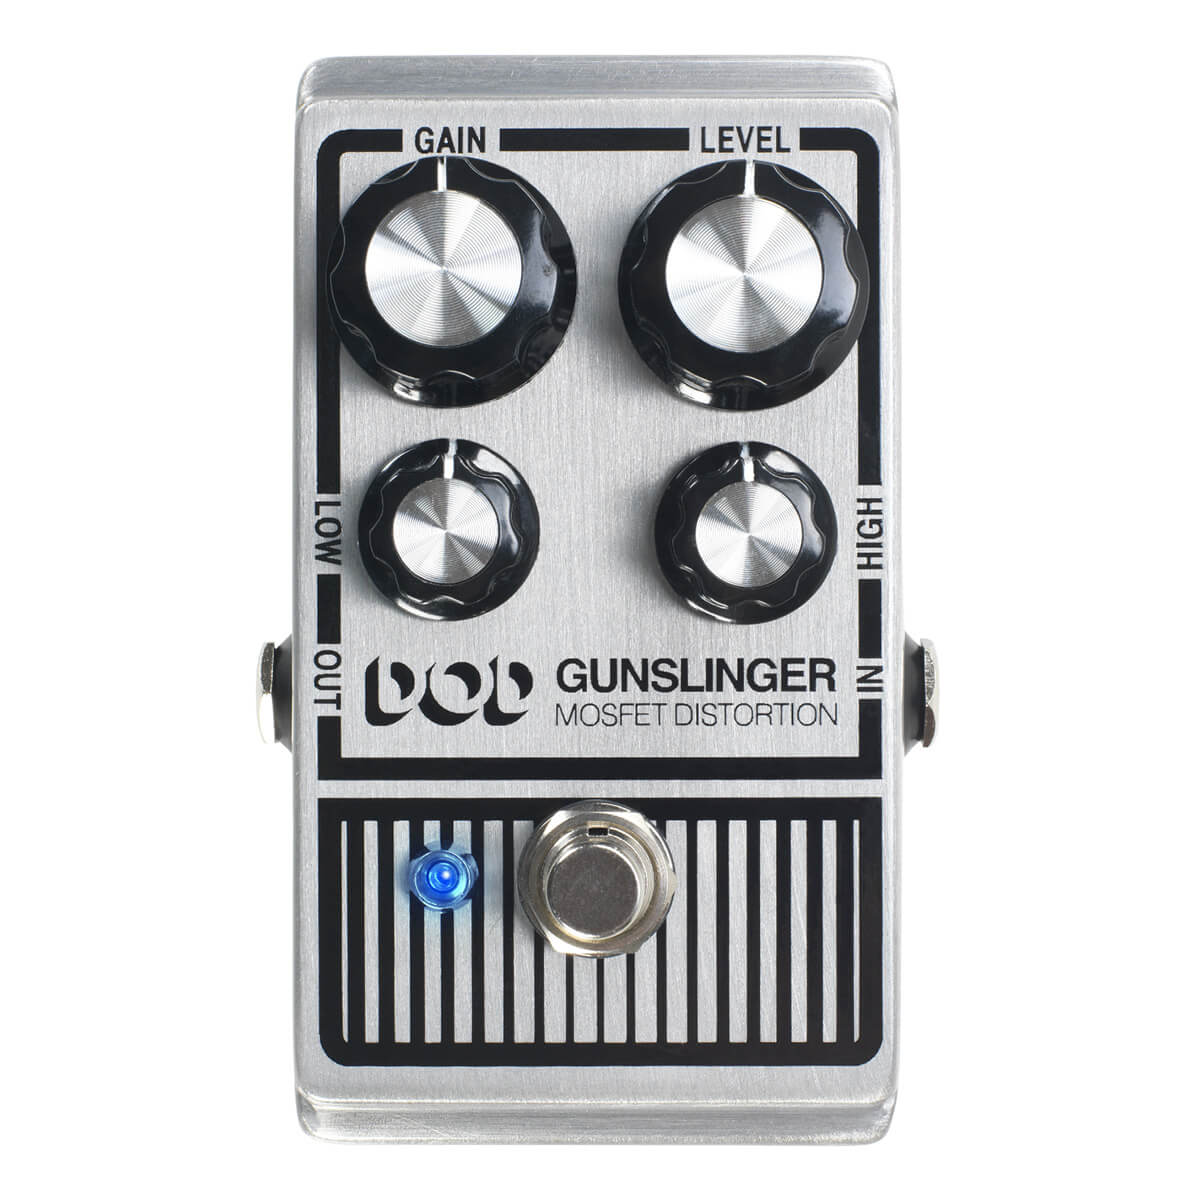 DOD Gunslinger aggressive distortion pedal top.